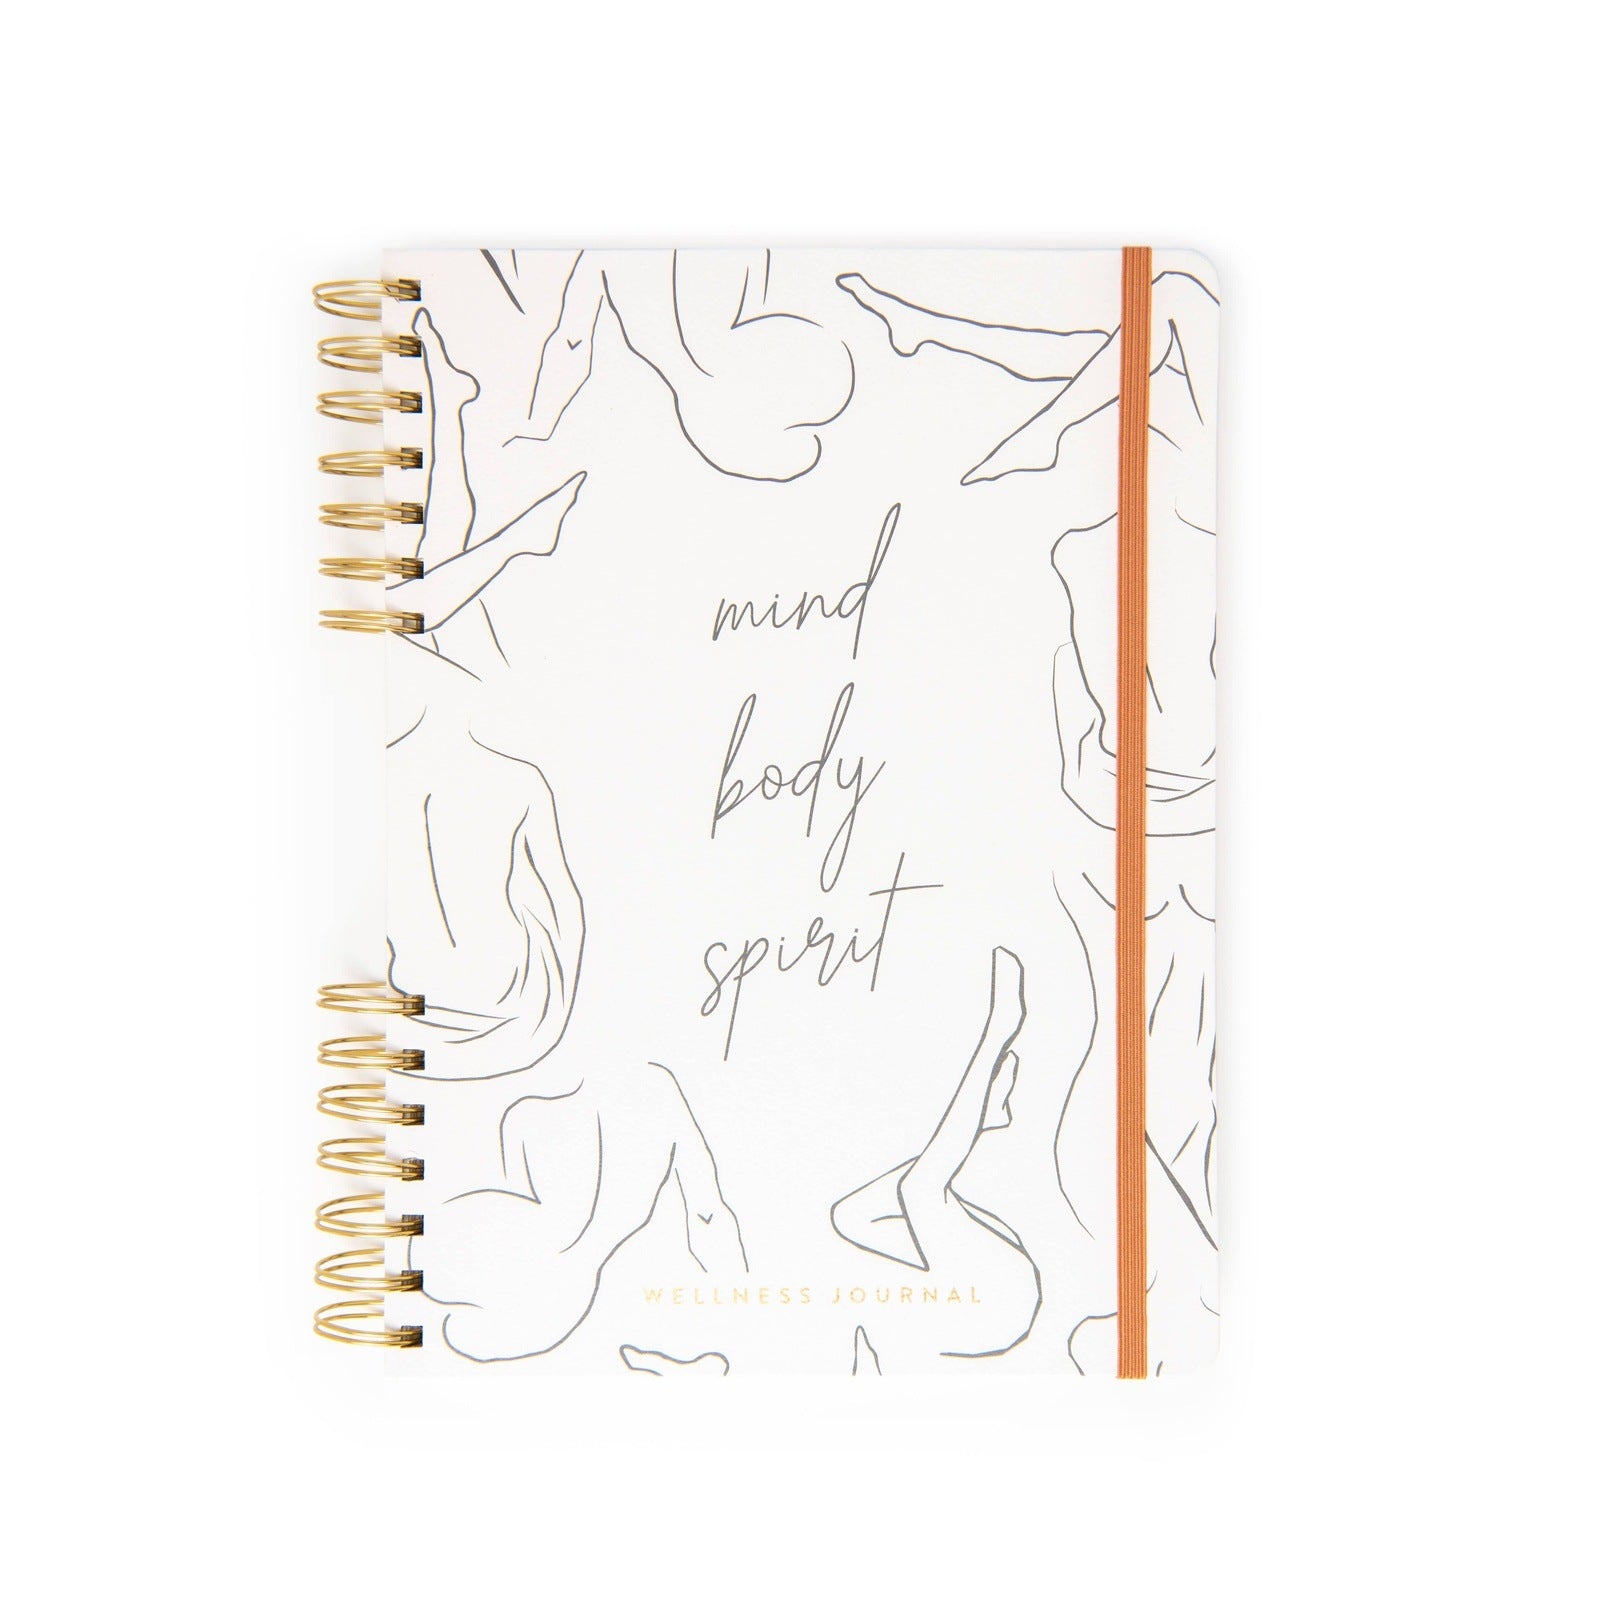 Guided Wellness Journal - "Mind Body Spirit" Notebooks + Journals